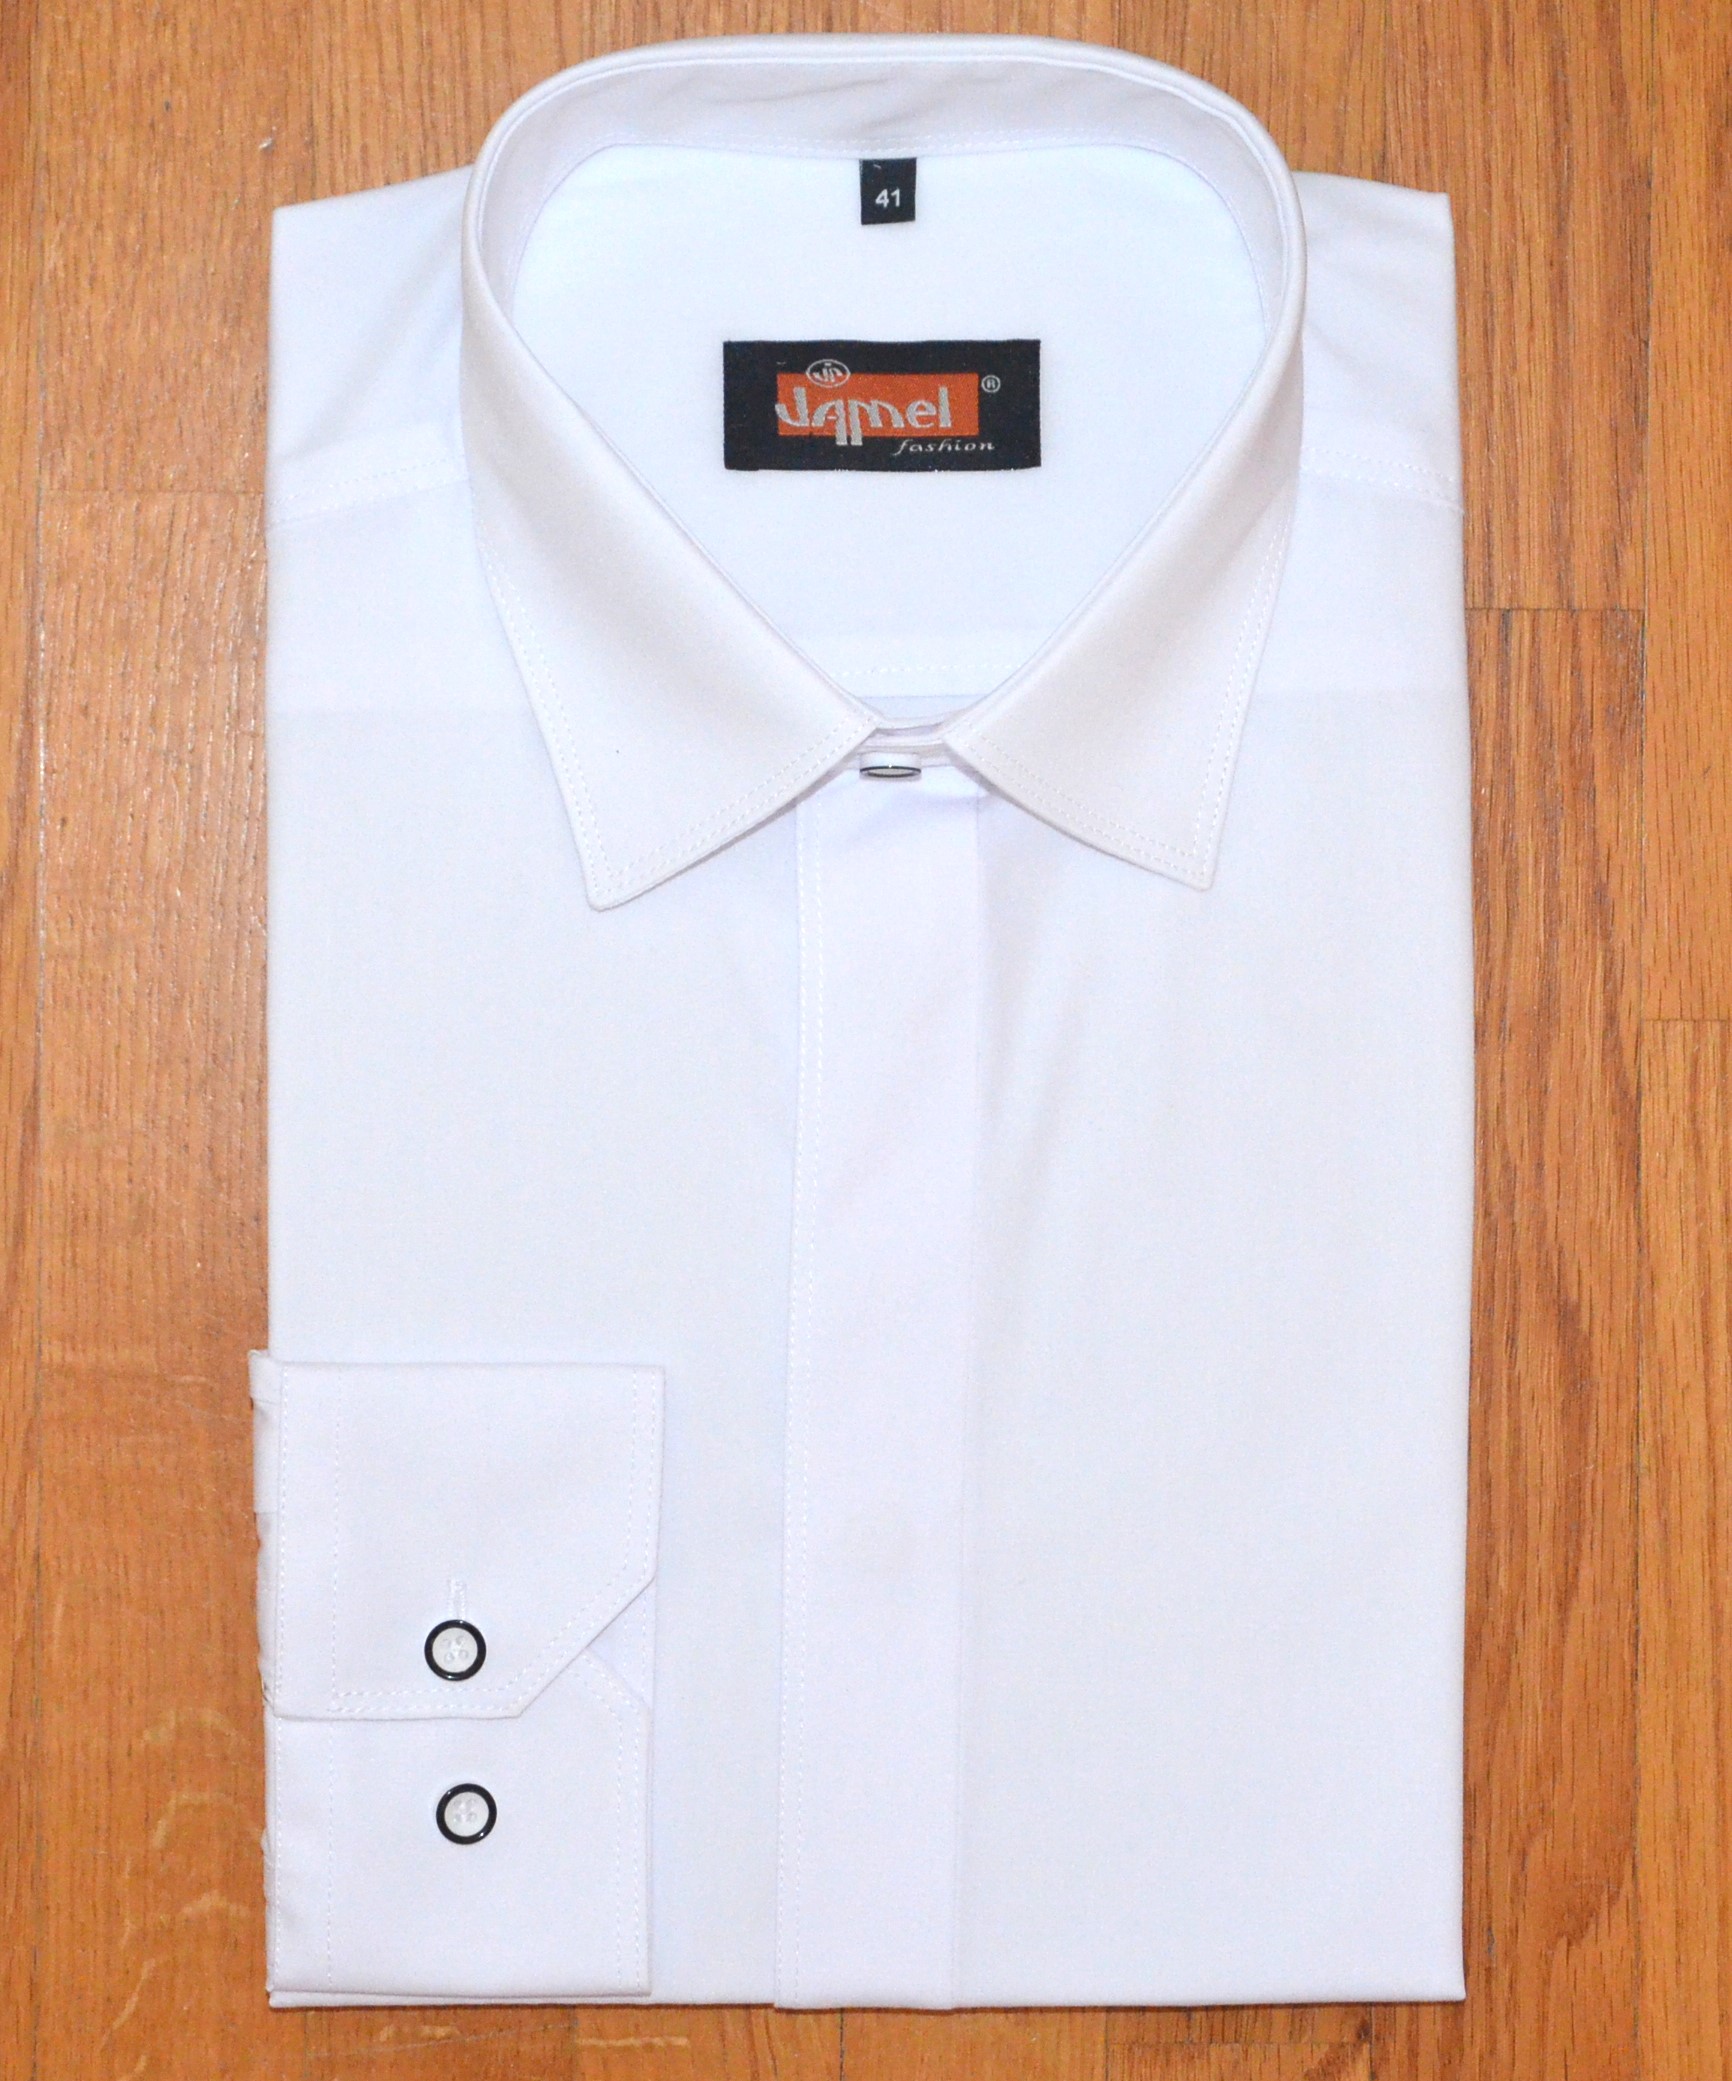 Pánská košile dlouhý rukáv Jamel Fashion 563 101/20 001/20 REGULAR FIT Bílá zakrytá léga Velikost: 43